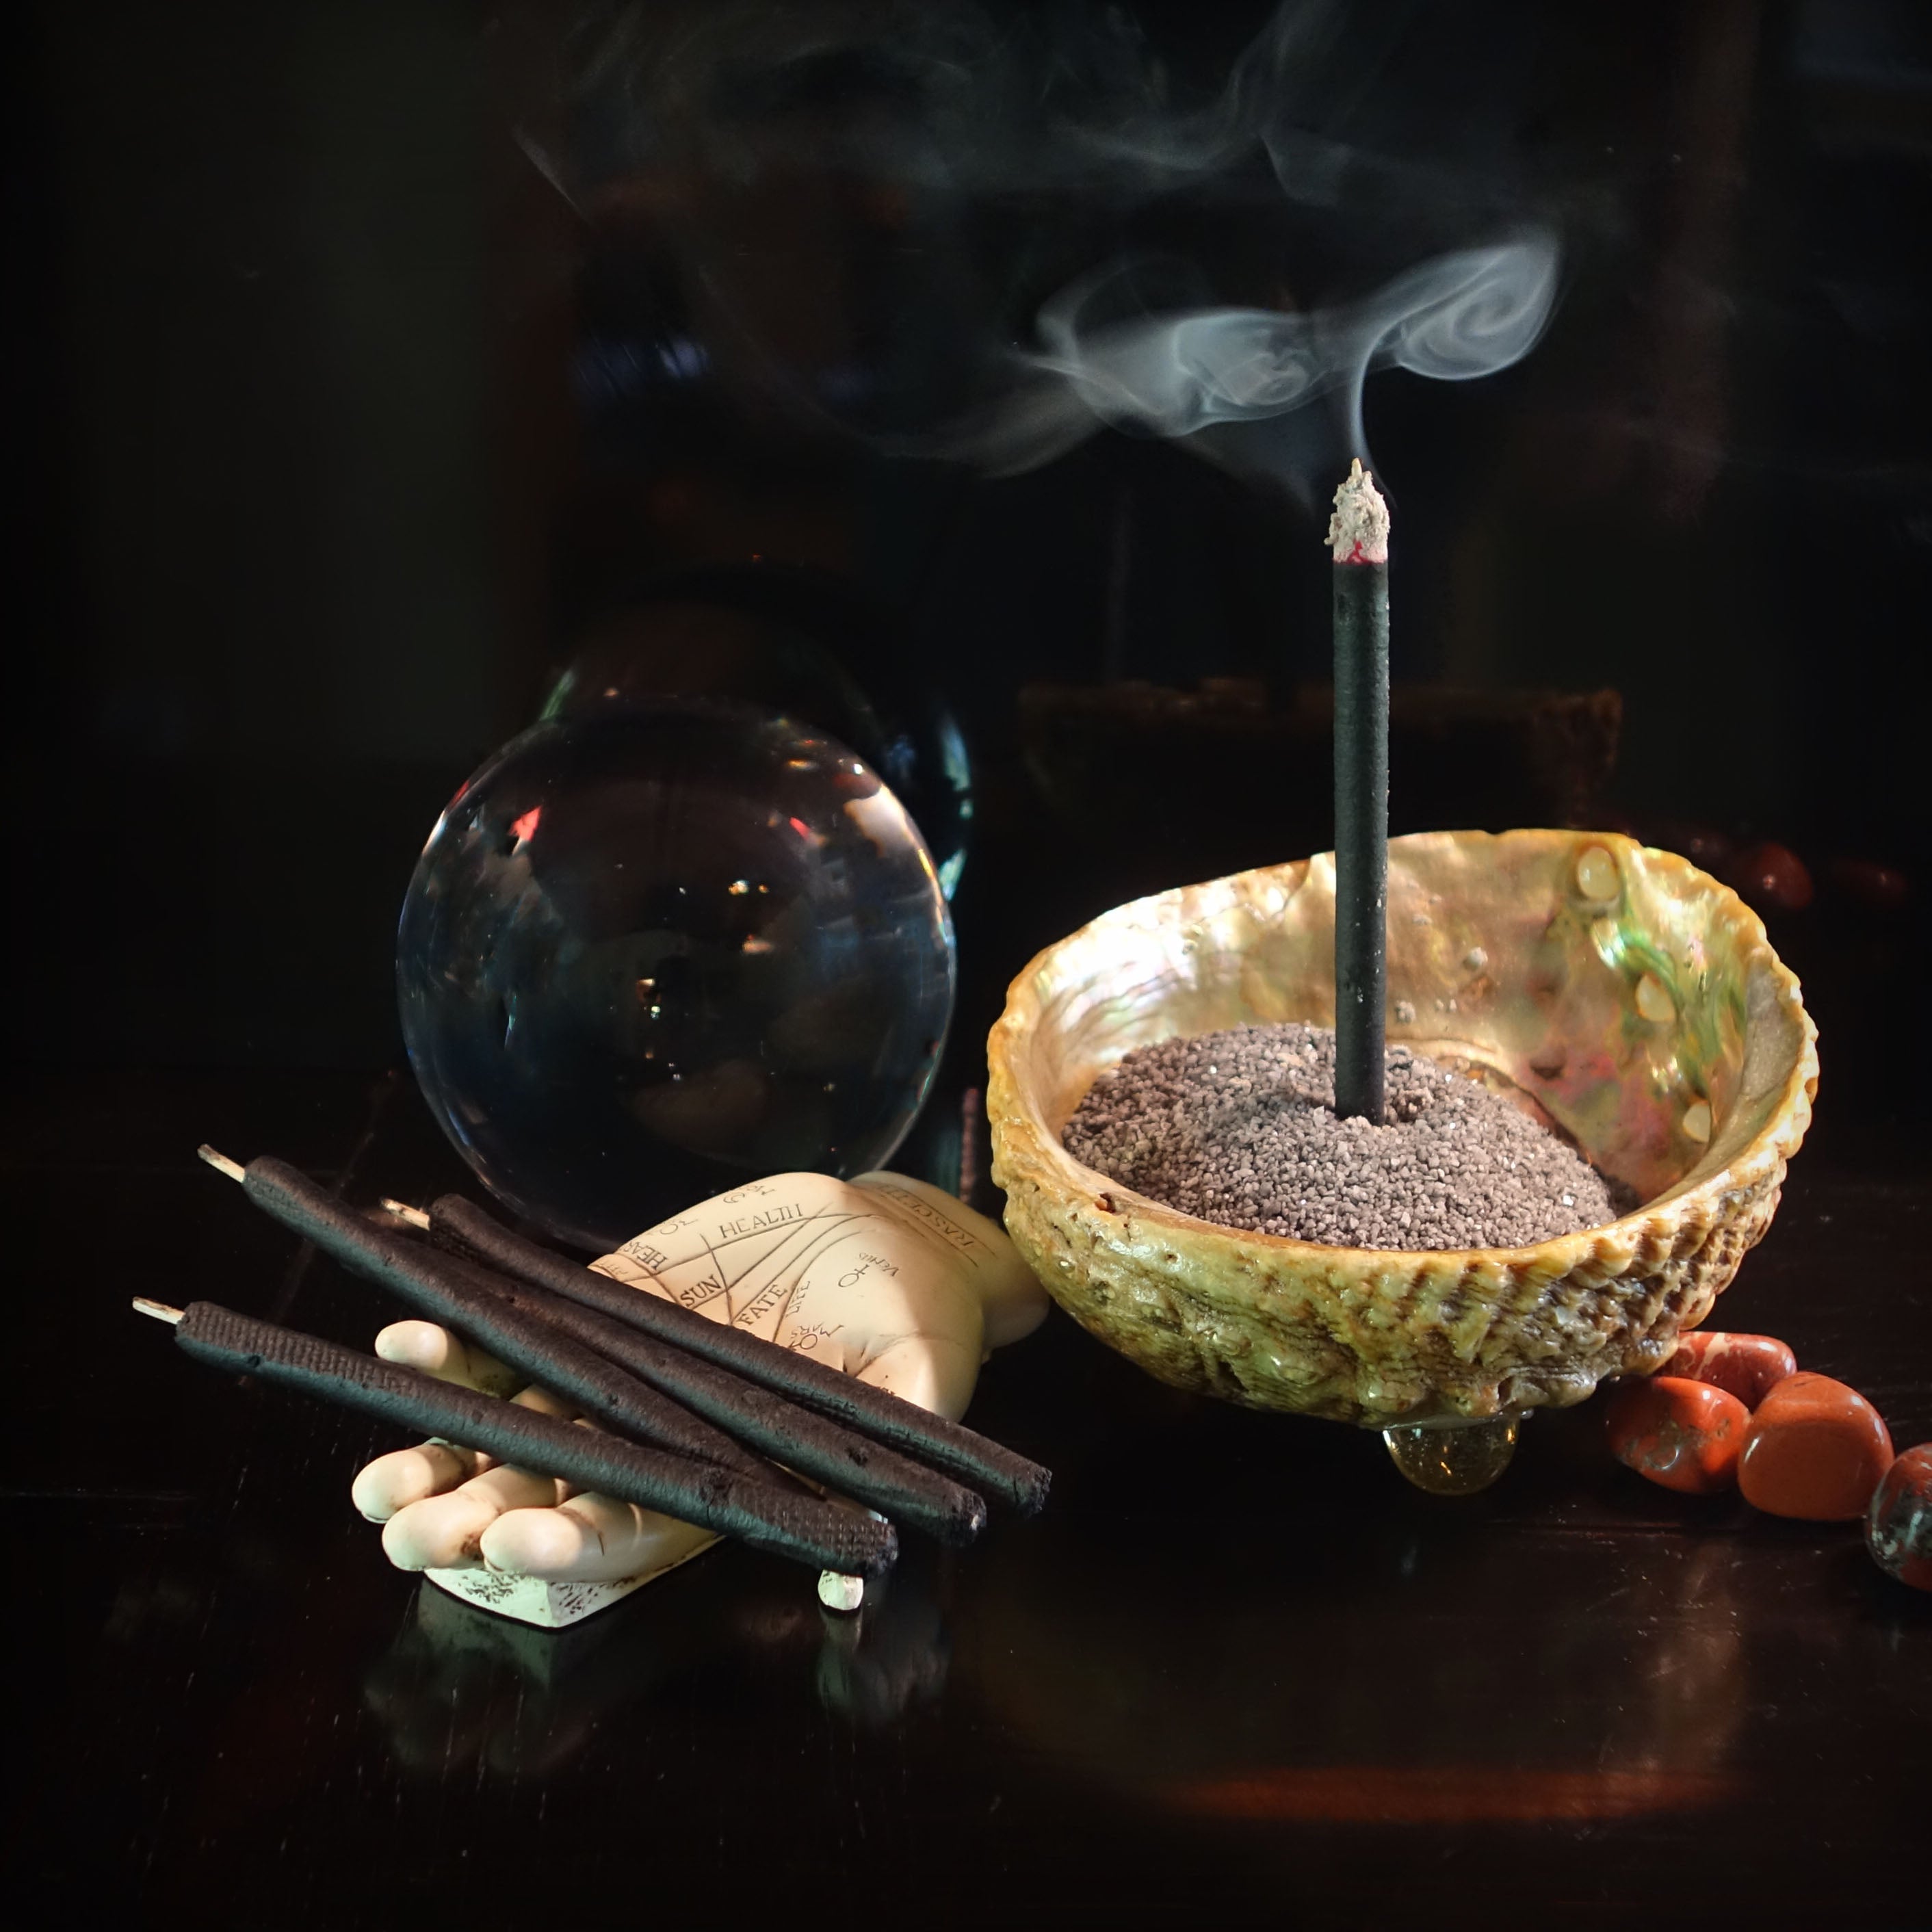 Inca Aromas all-natural fair-trade incense. Priprioca for Grounding and Strength Incense